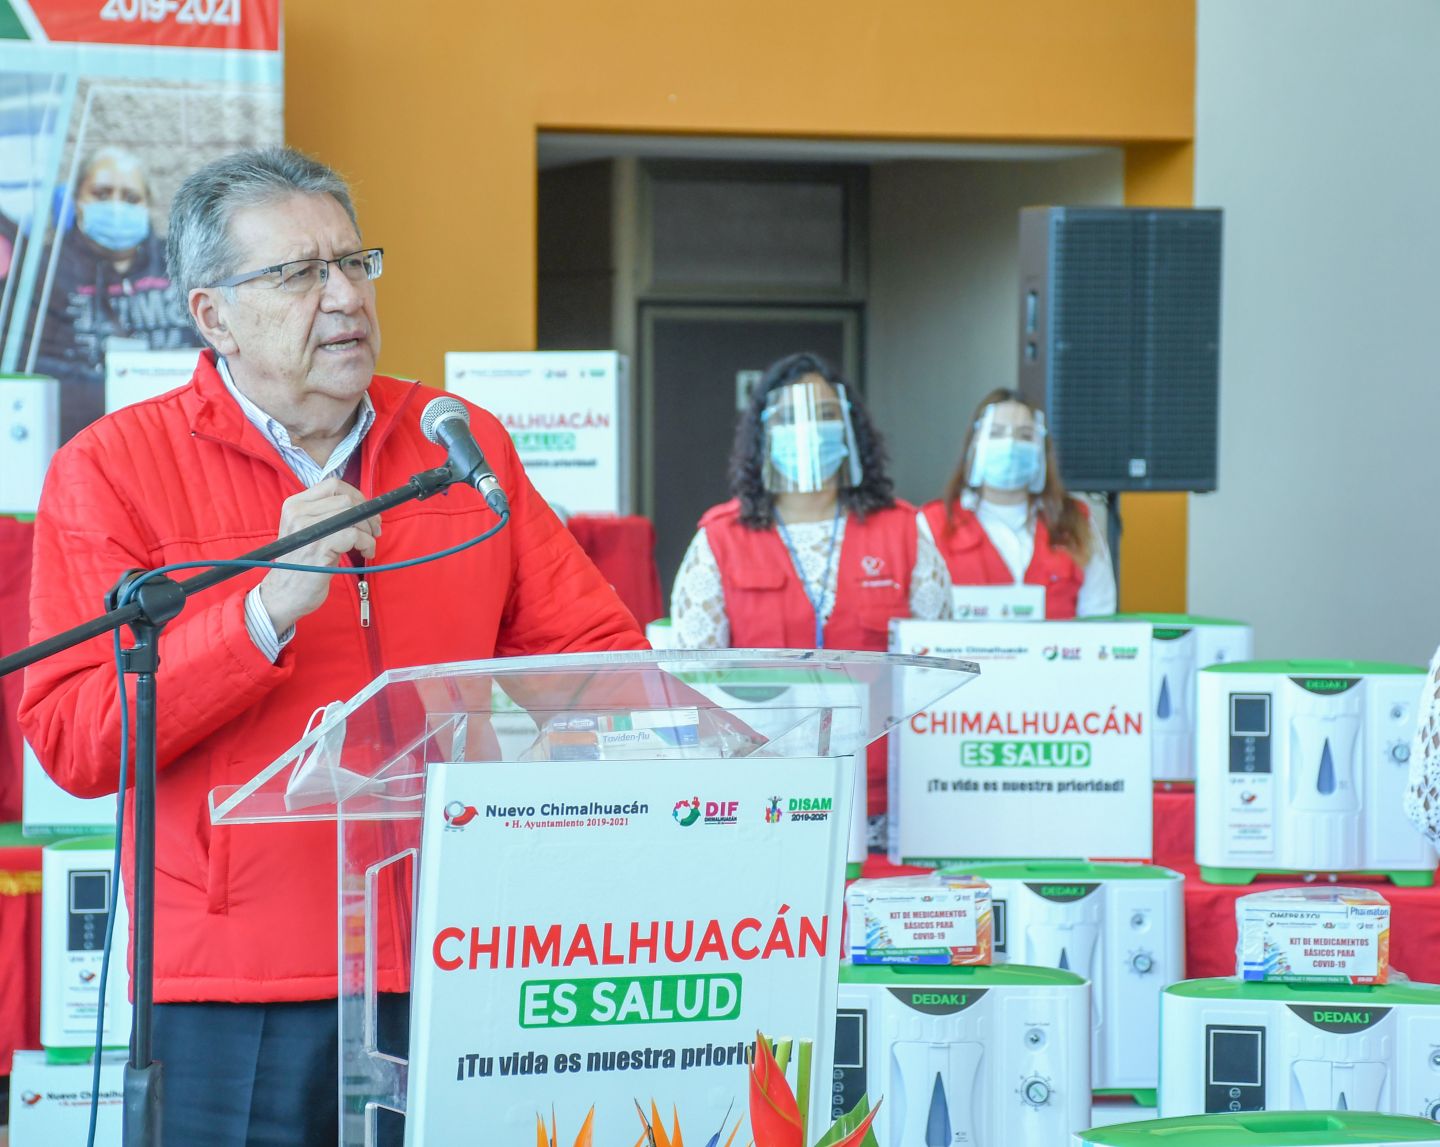 Chimalhuacán es referencia nacional en estrategias para enfrentar al COVID-19: Tolentino Román